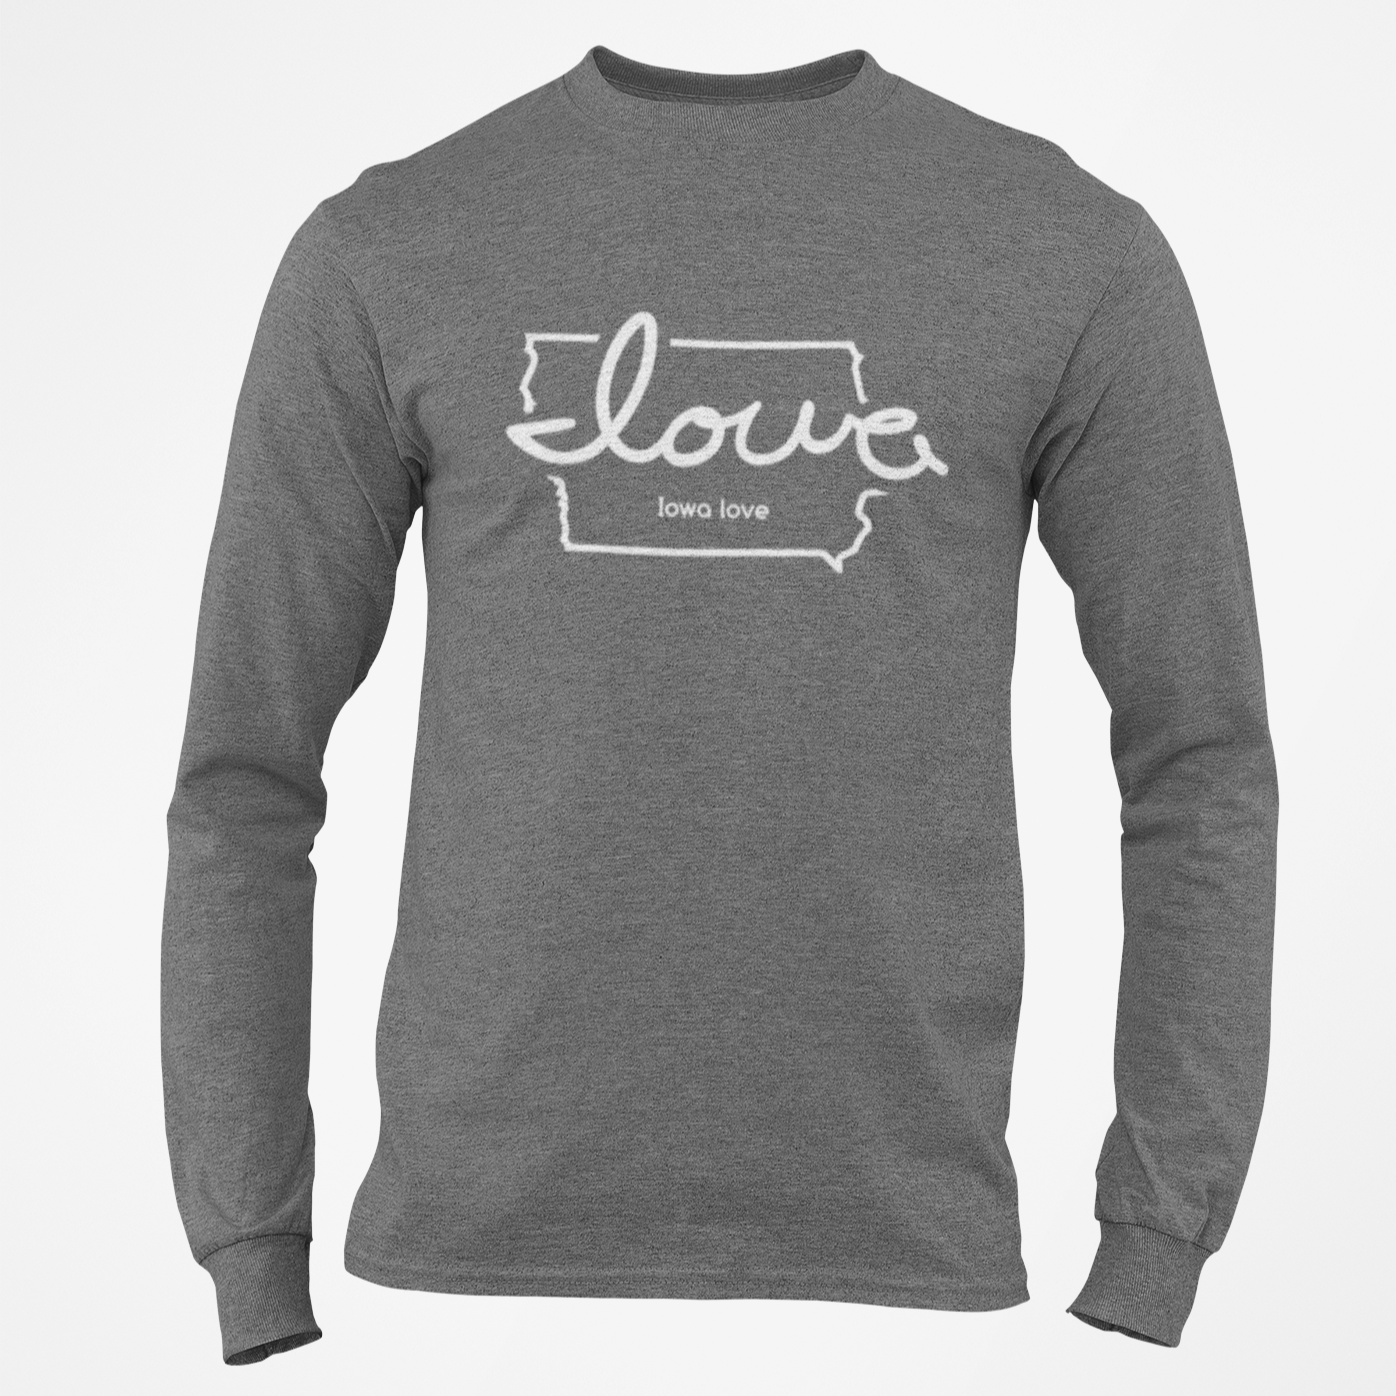 "Iowa love" Long Sleeve